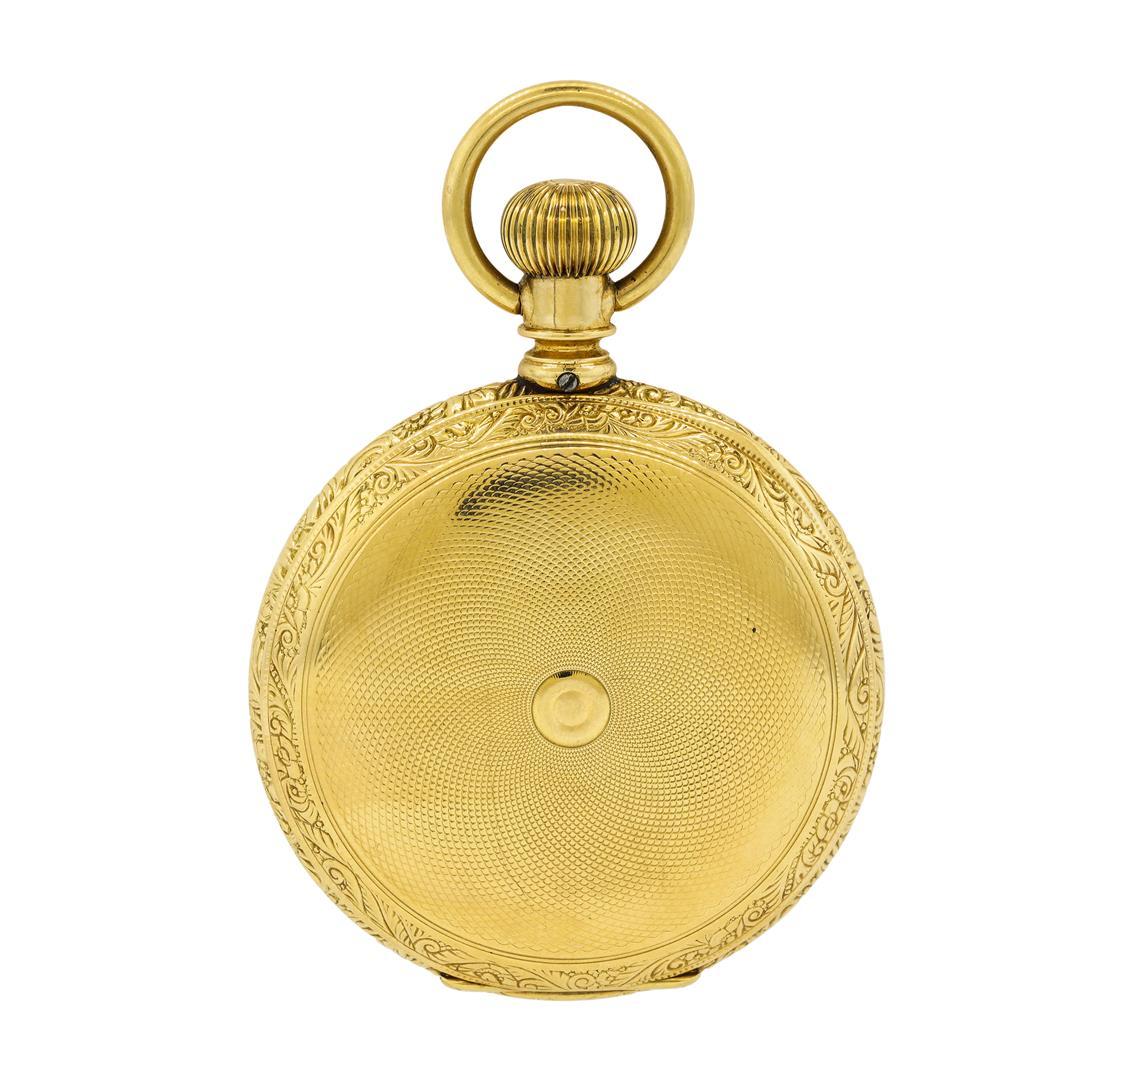 Antique Hampden Watch Co. Pocket Watch - 14KT Yellow Gold